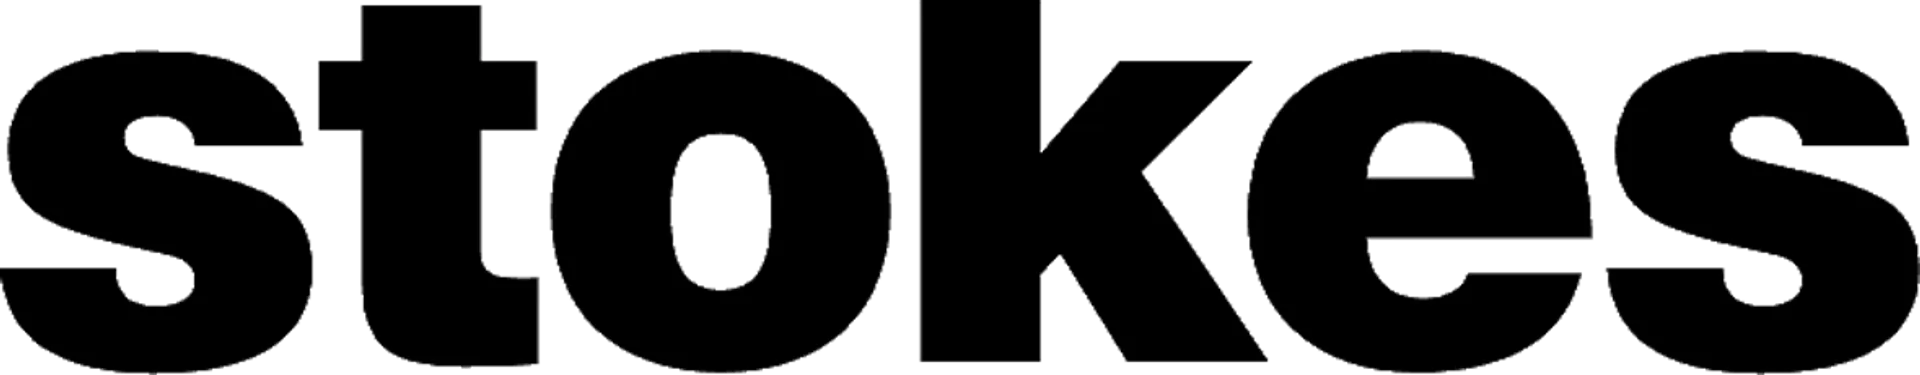 STOKES logo de circulaires